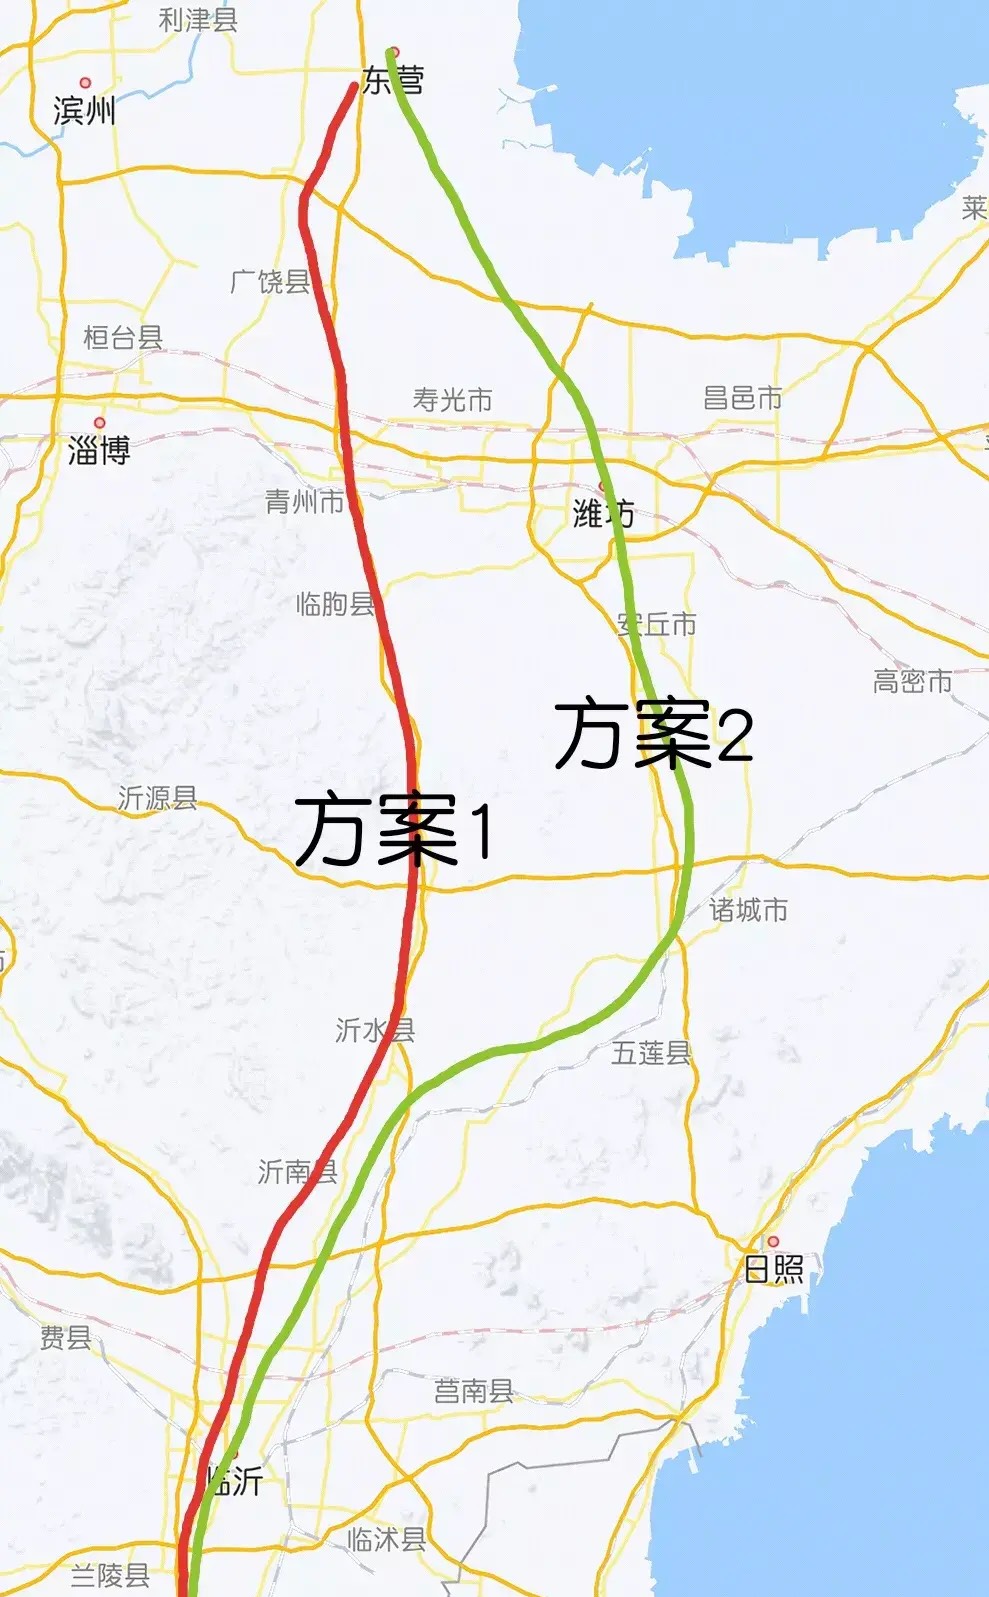 京沪高铁安丘东站位置图片